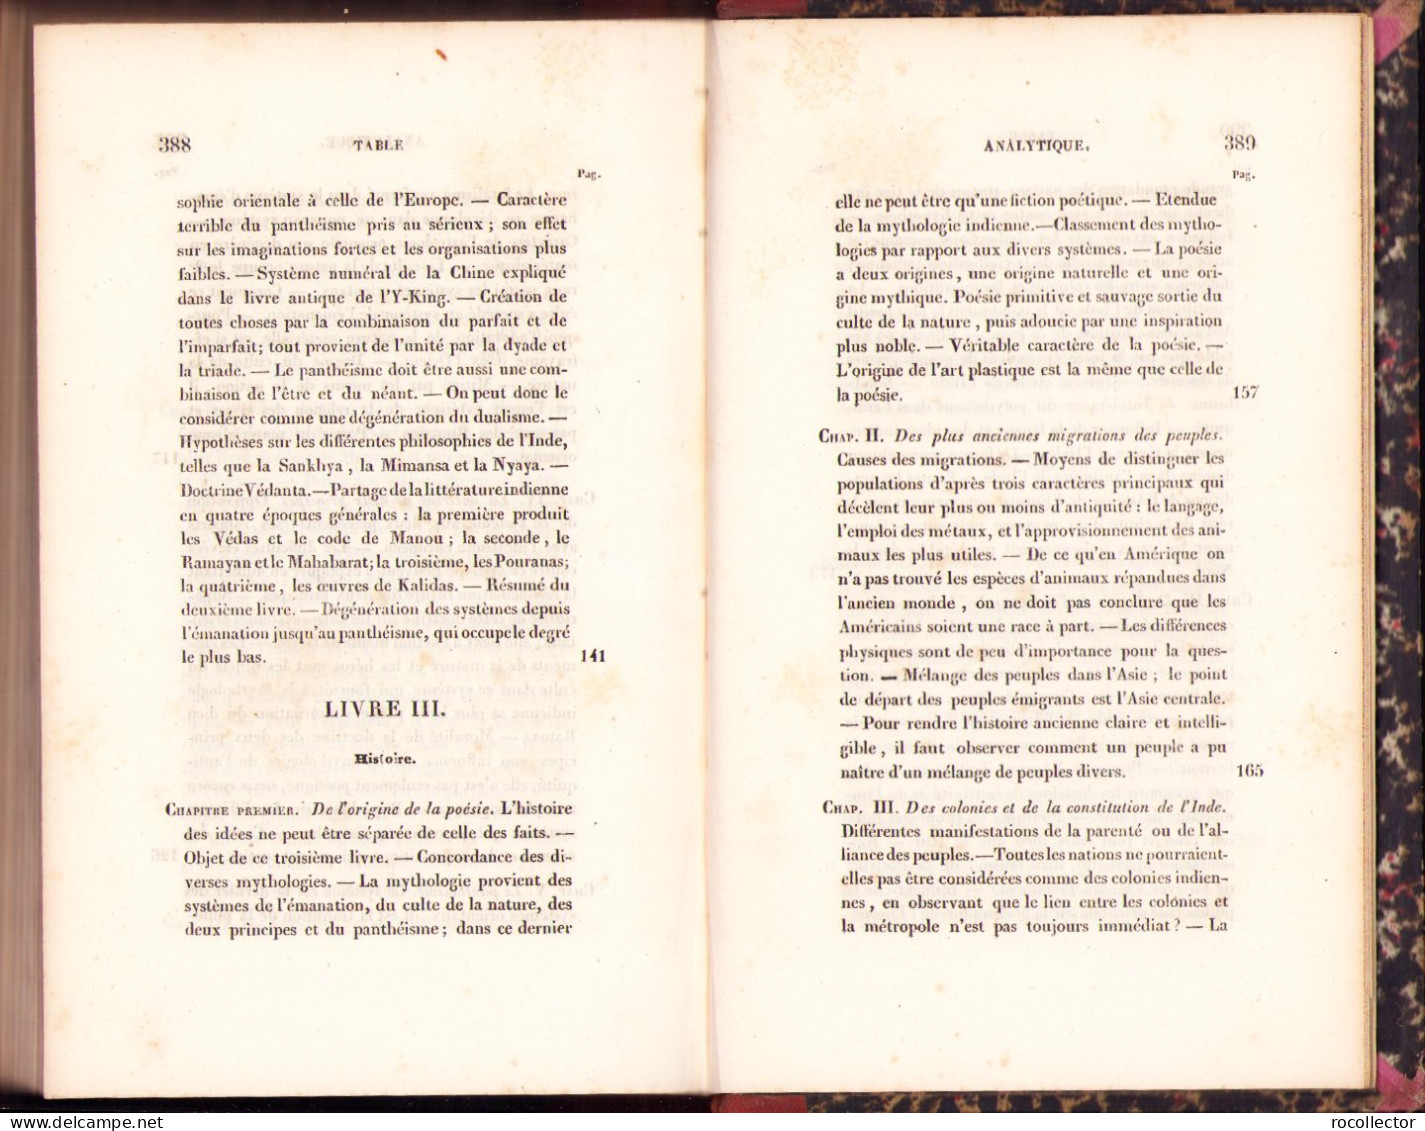 Essai sur la langue et la philosophie des Indiens traduit de l’allemand par Frederic Schlegel, 1837 402SP